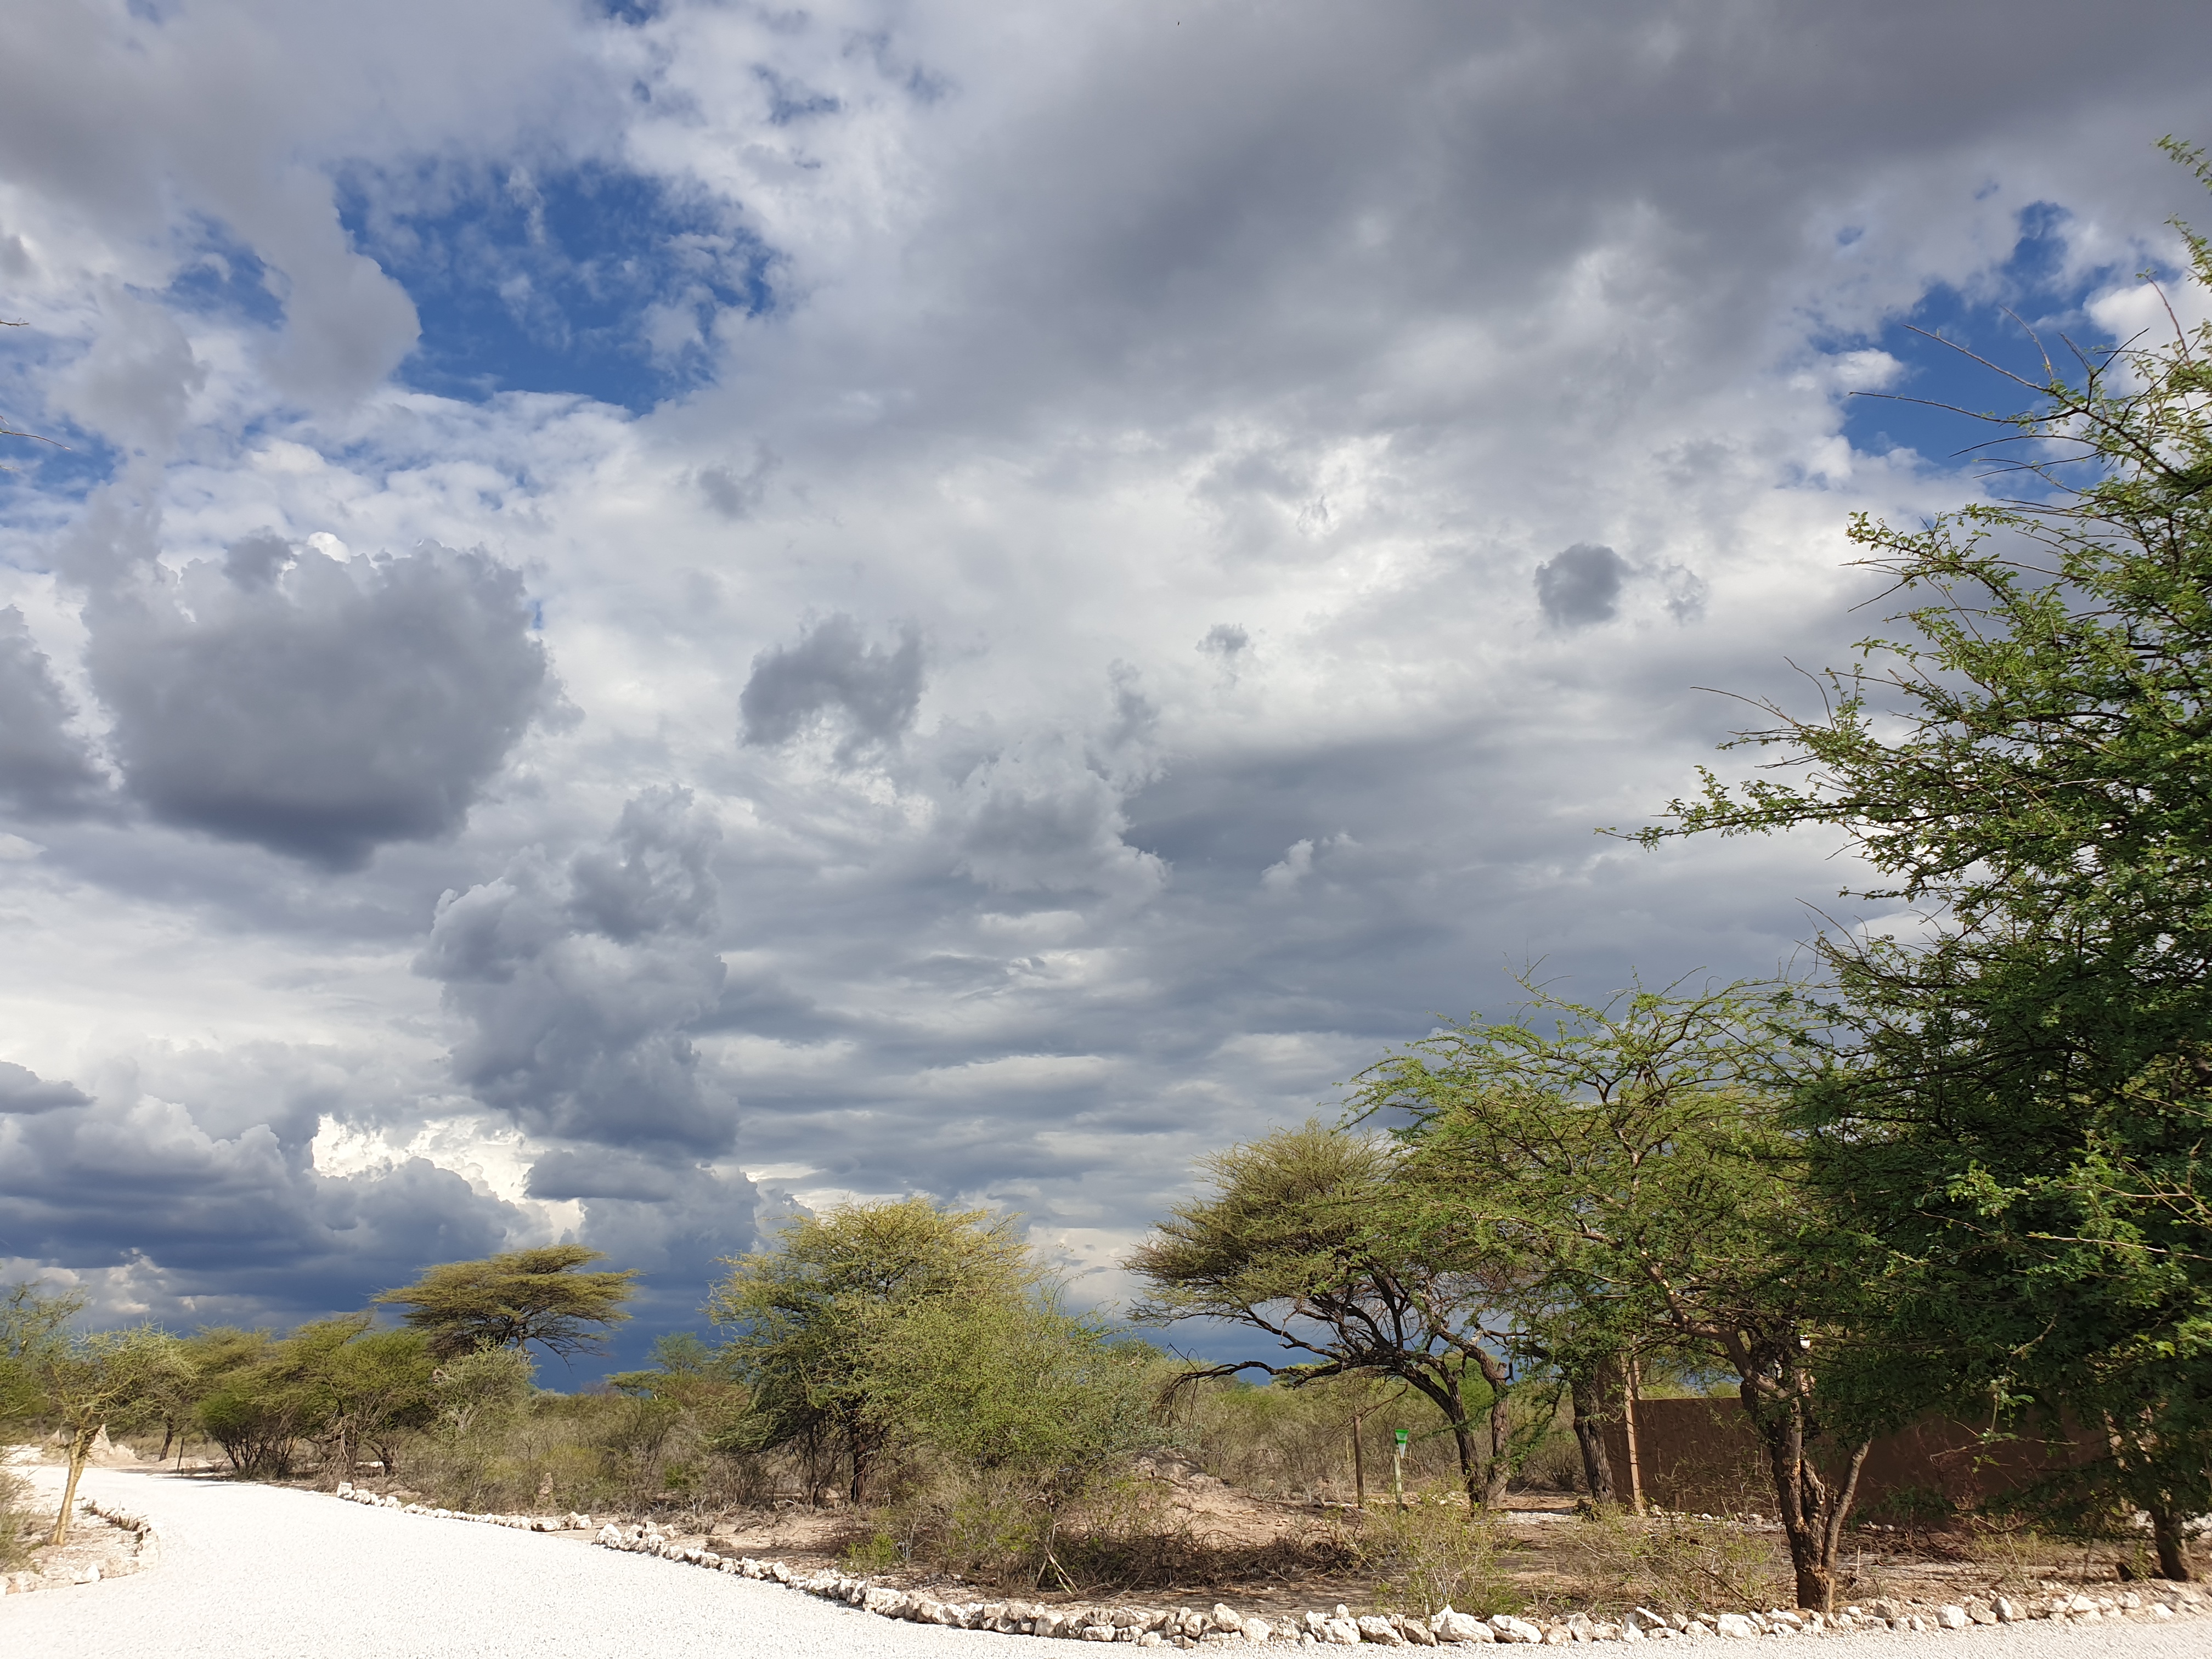 Entrée dans l'Onguma Nature Reserve, Namibie, sous un ciel tourmenté.